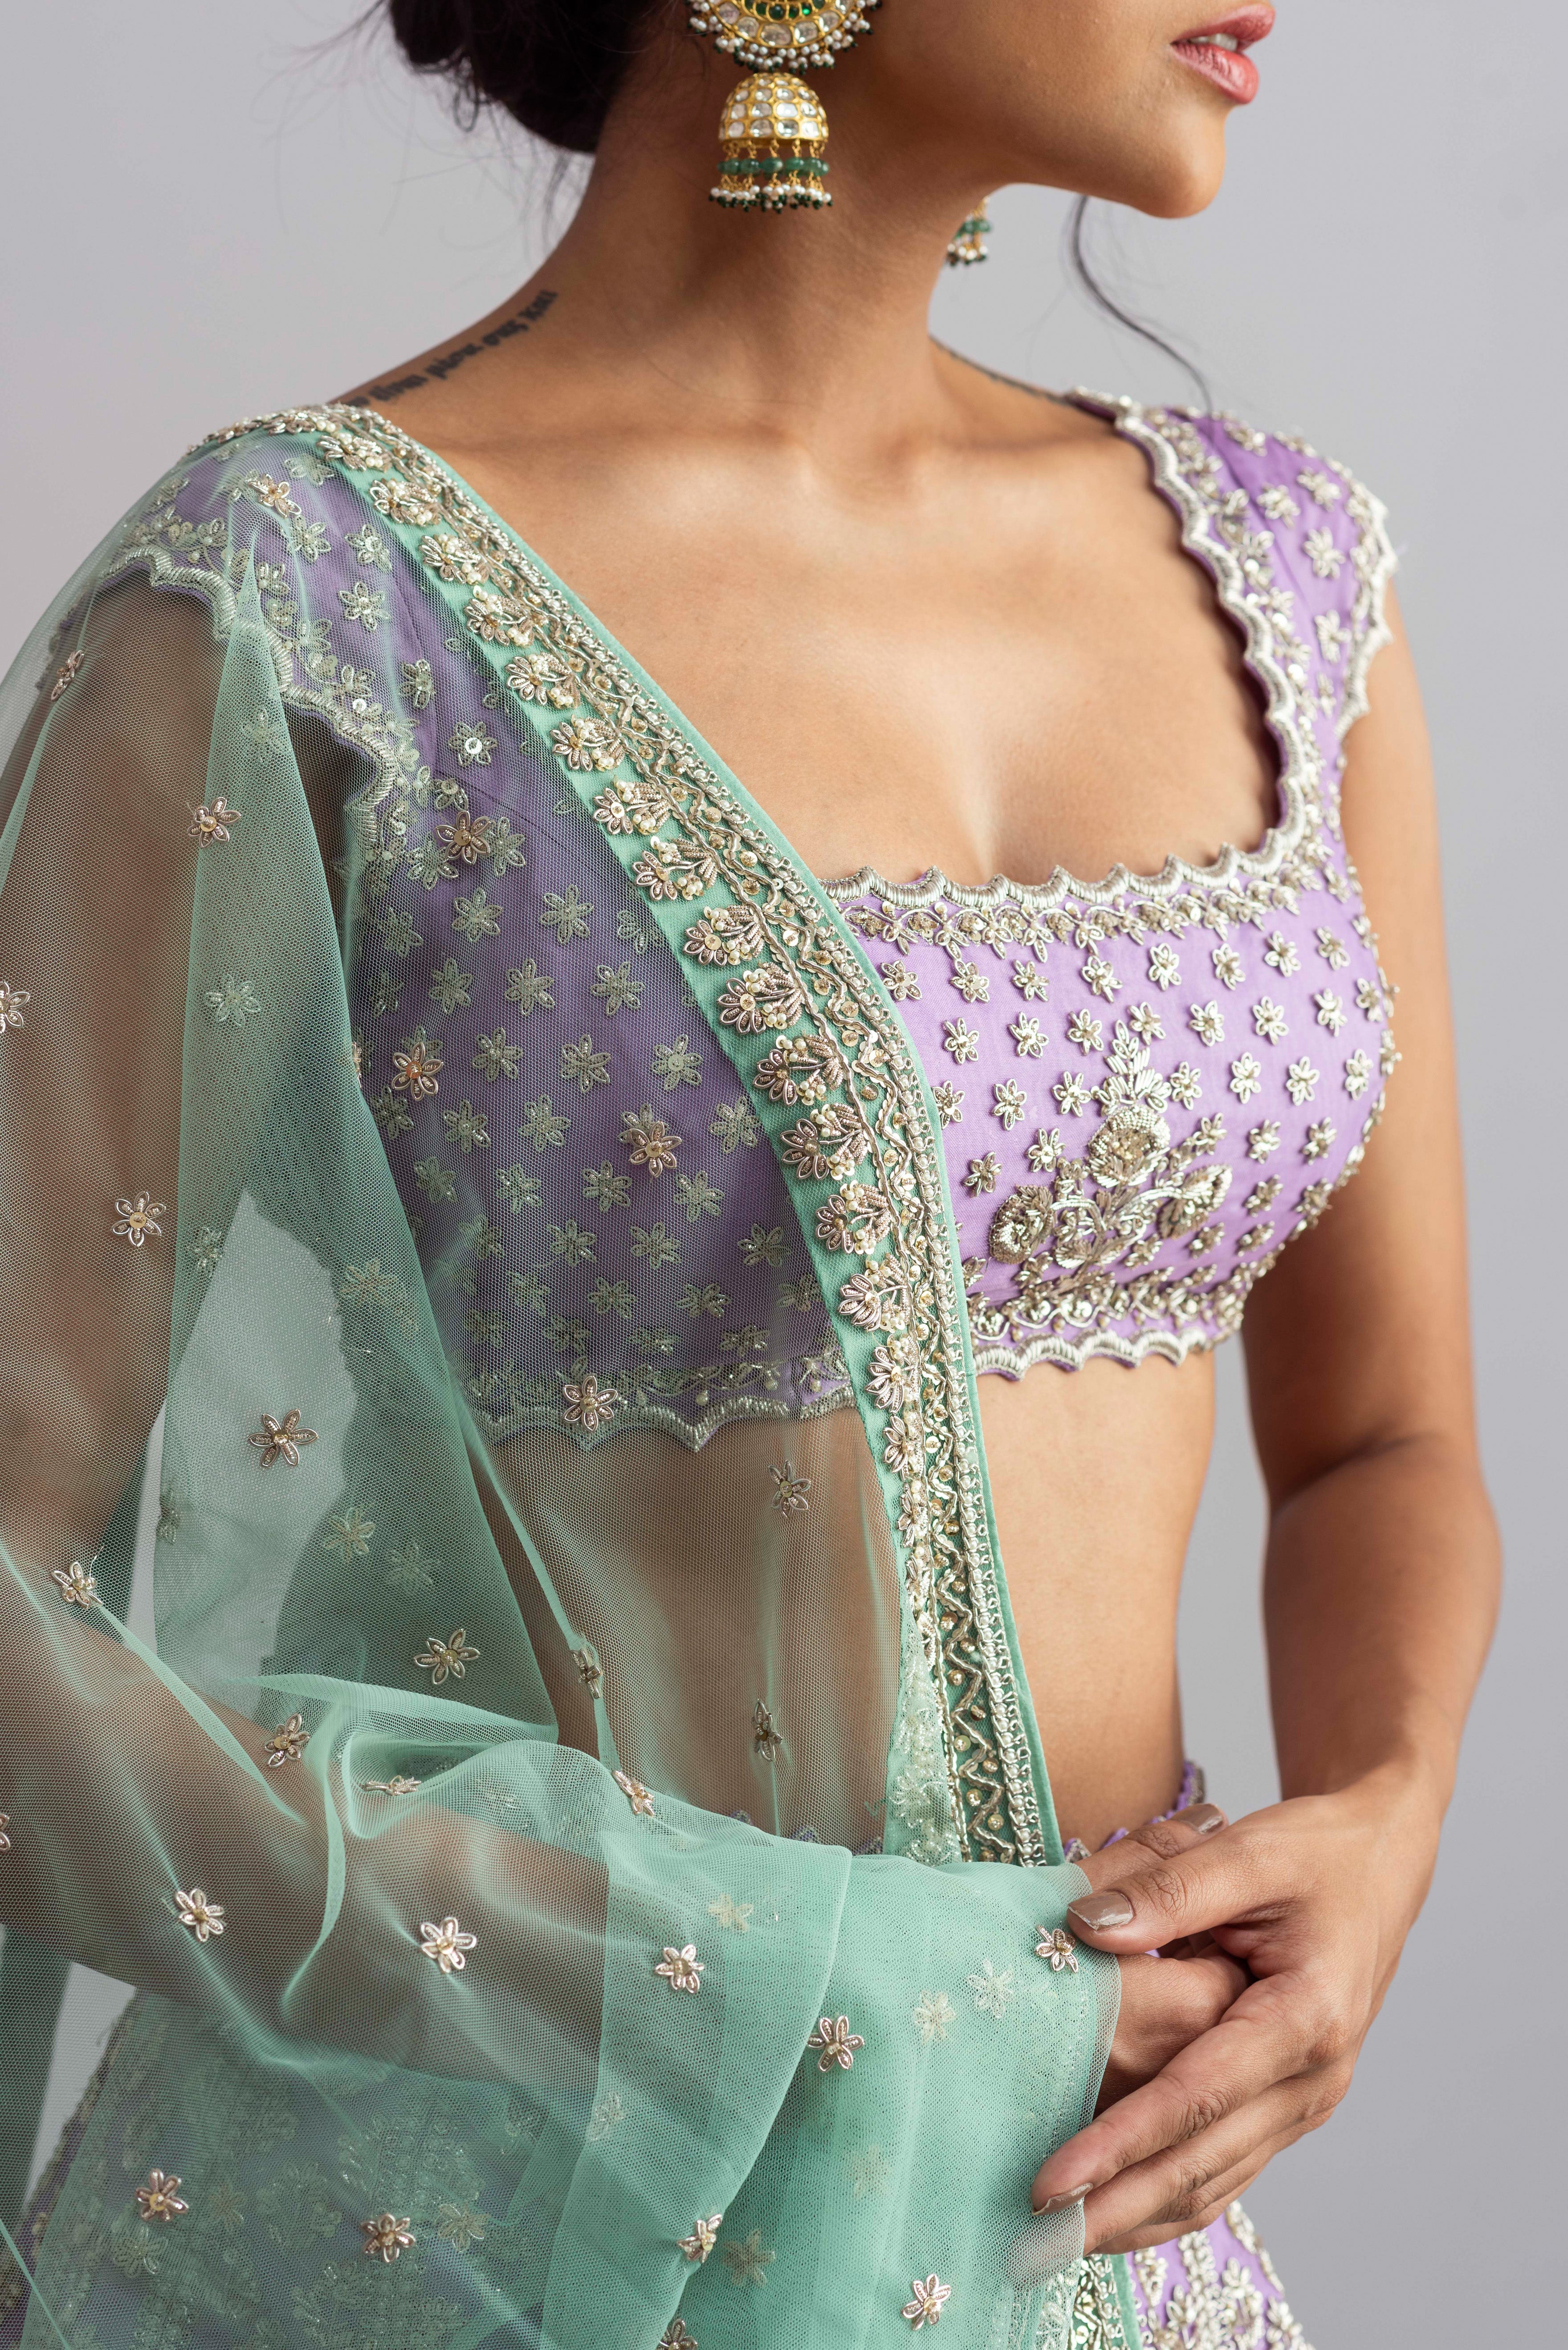 Anushree Reddy - Aafreen - Lavender Embroidered Lehenga Set